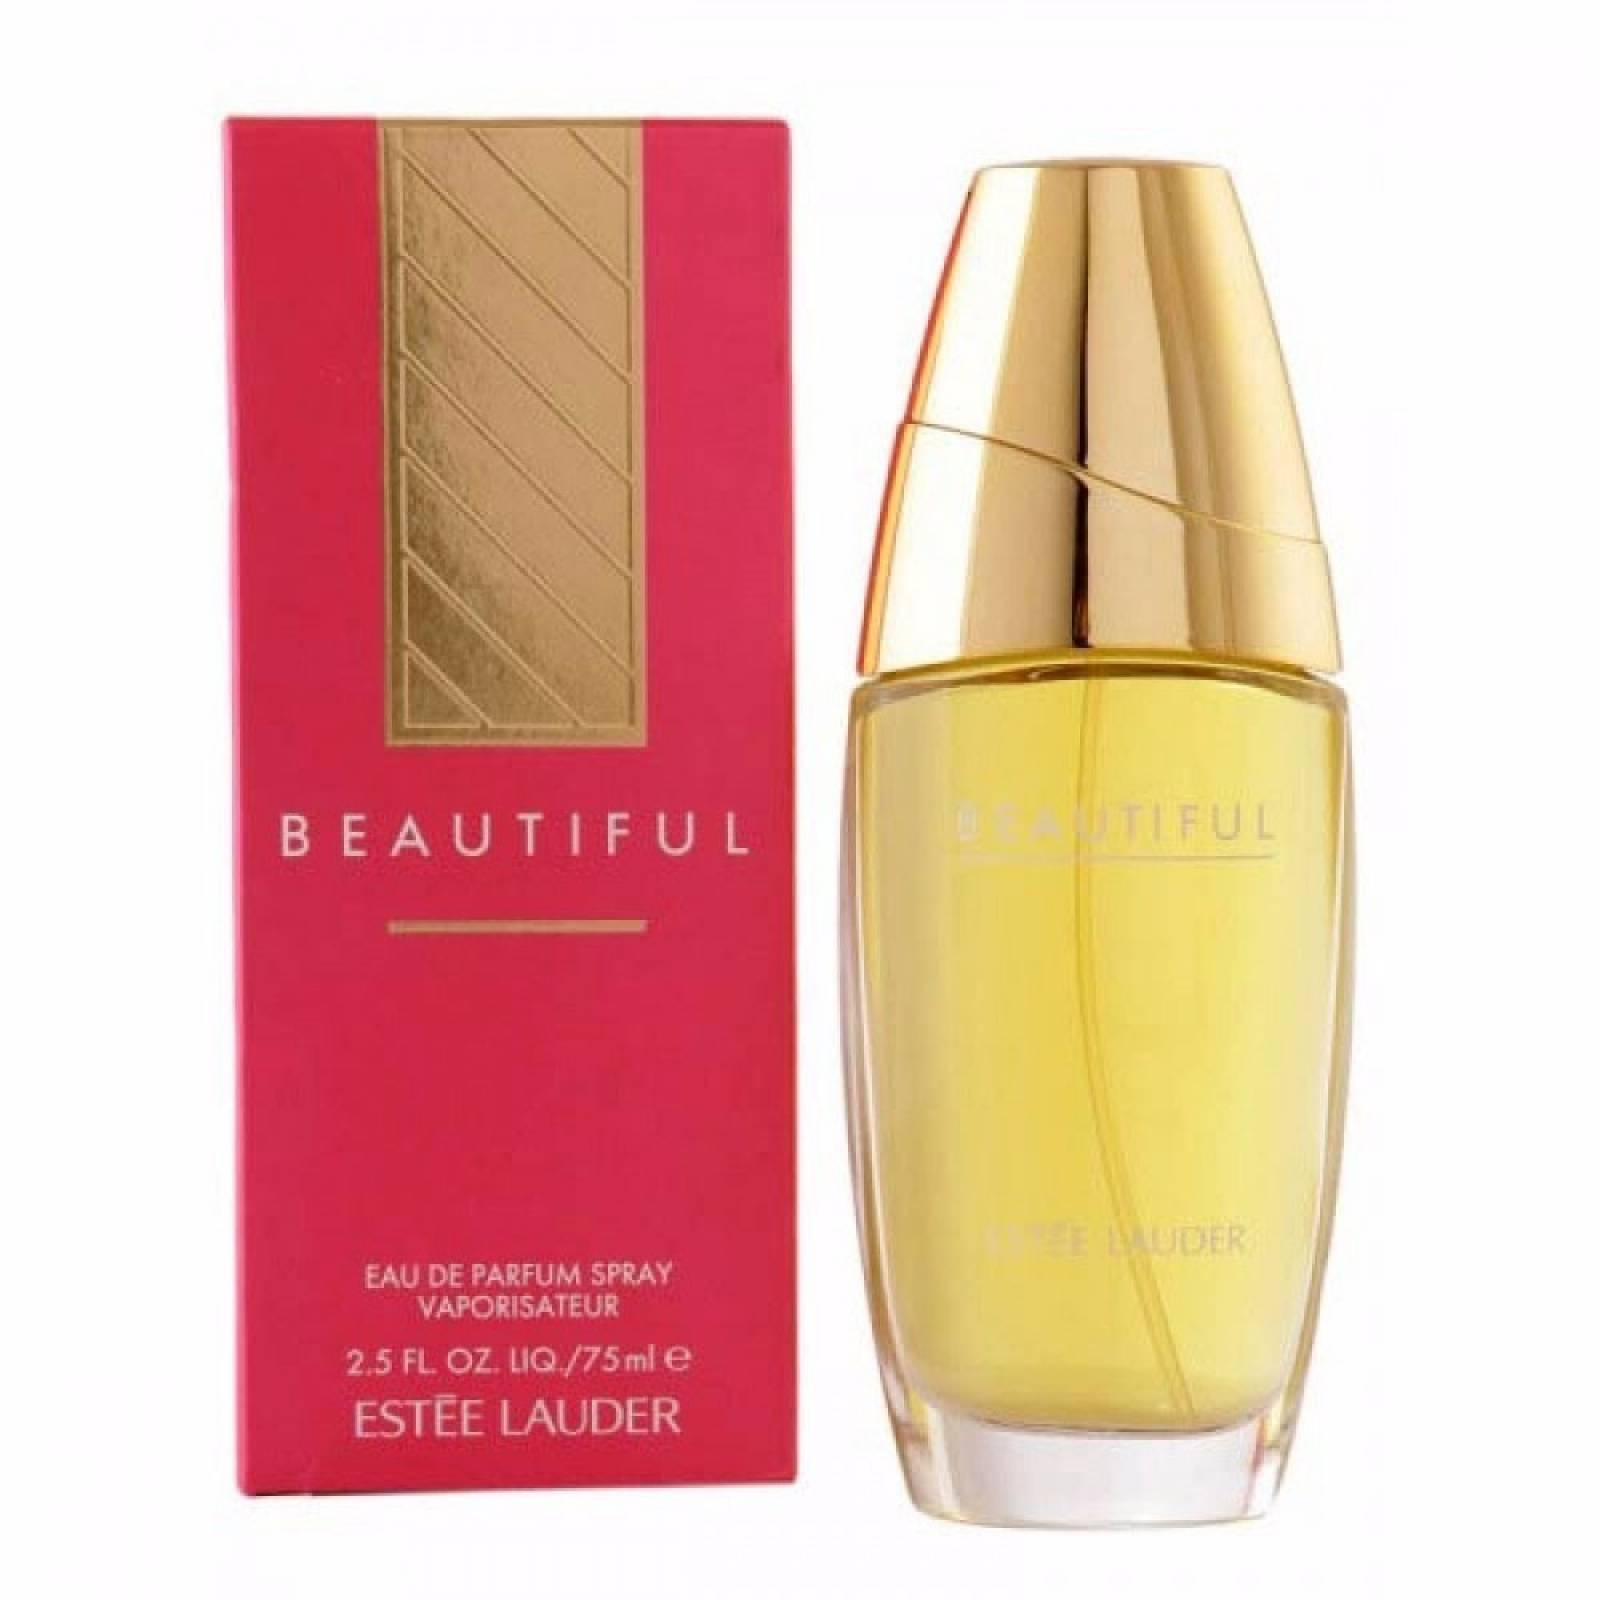 Beautiful De Estee Lauder Eau de Parfum 75 ml